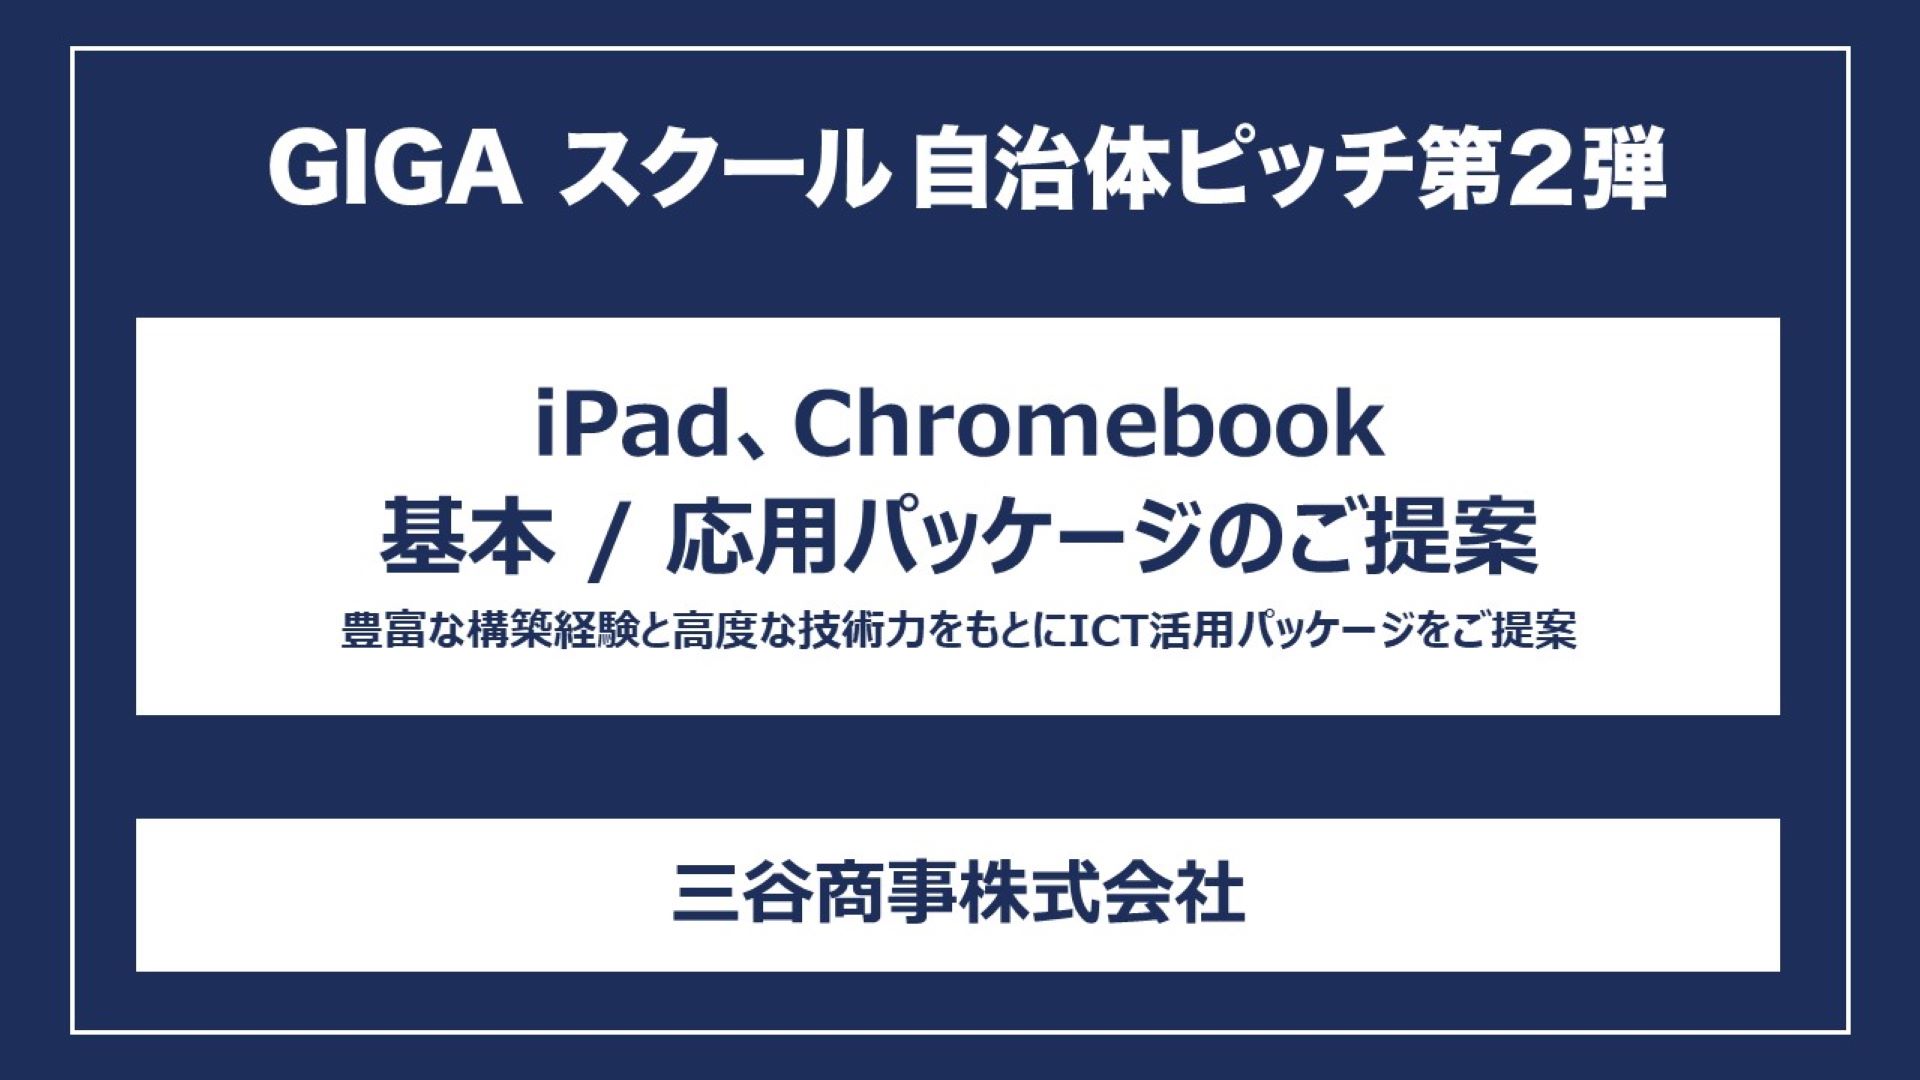 iPad、Chromebook 基本/応用パッケージのご提案 豊富な構築経験と高度な技術力をもとにICT活用パッケージをご提案